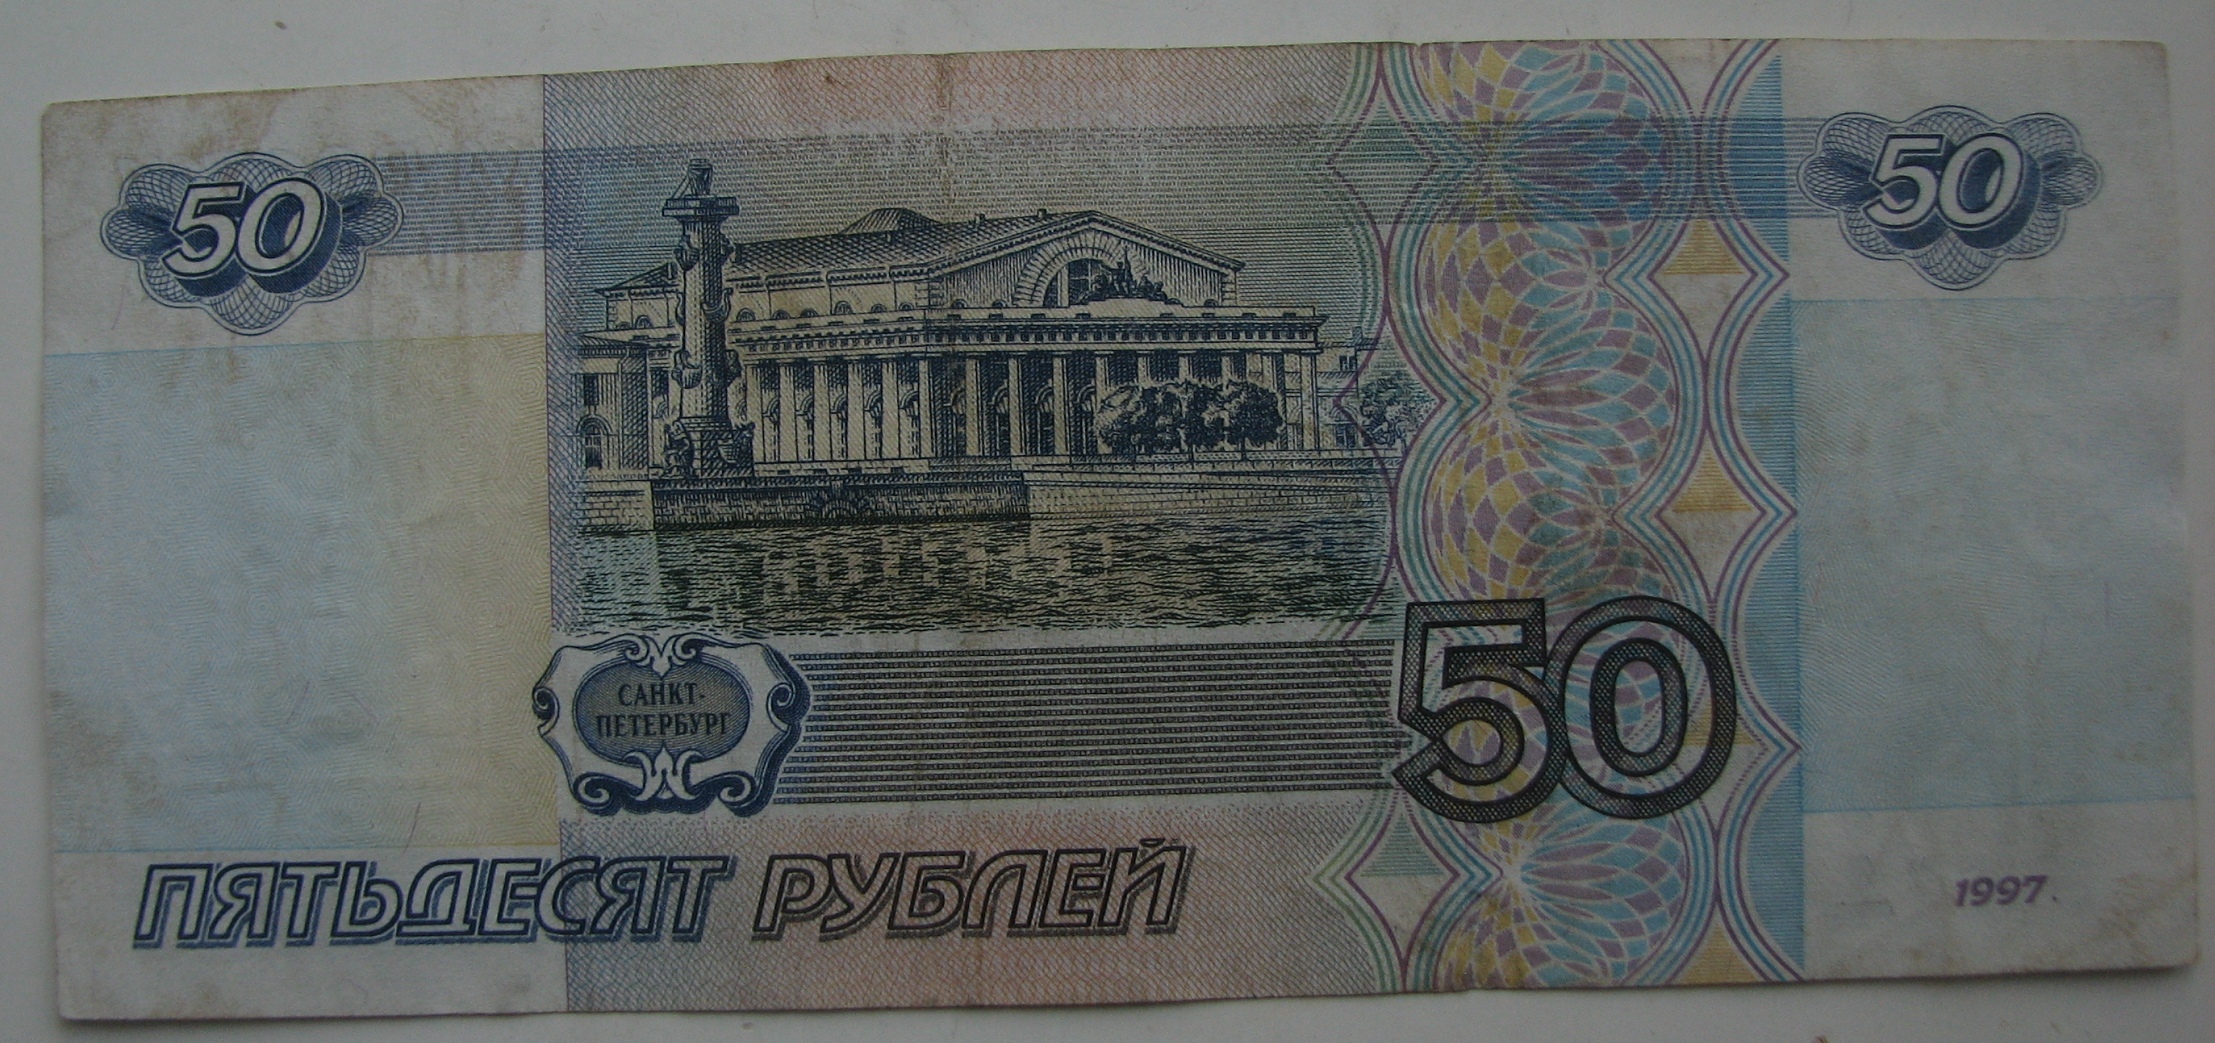 50 рублей на каждого ребенка. Купюра 50 рублей. Банкнота 50 рублей. Пятьдесят рублей банкнота. 50 Рублей 1997.